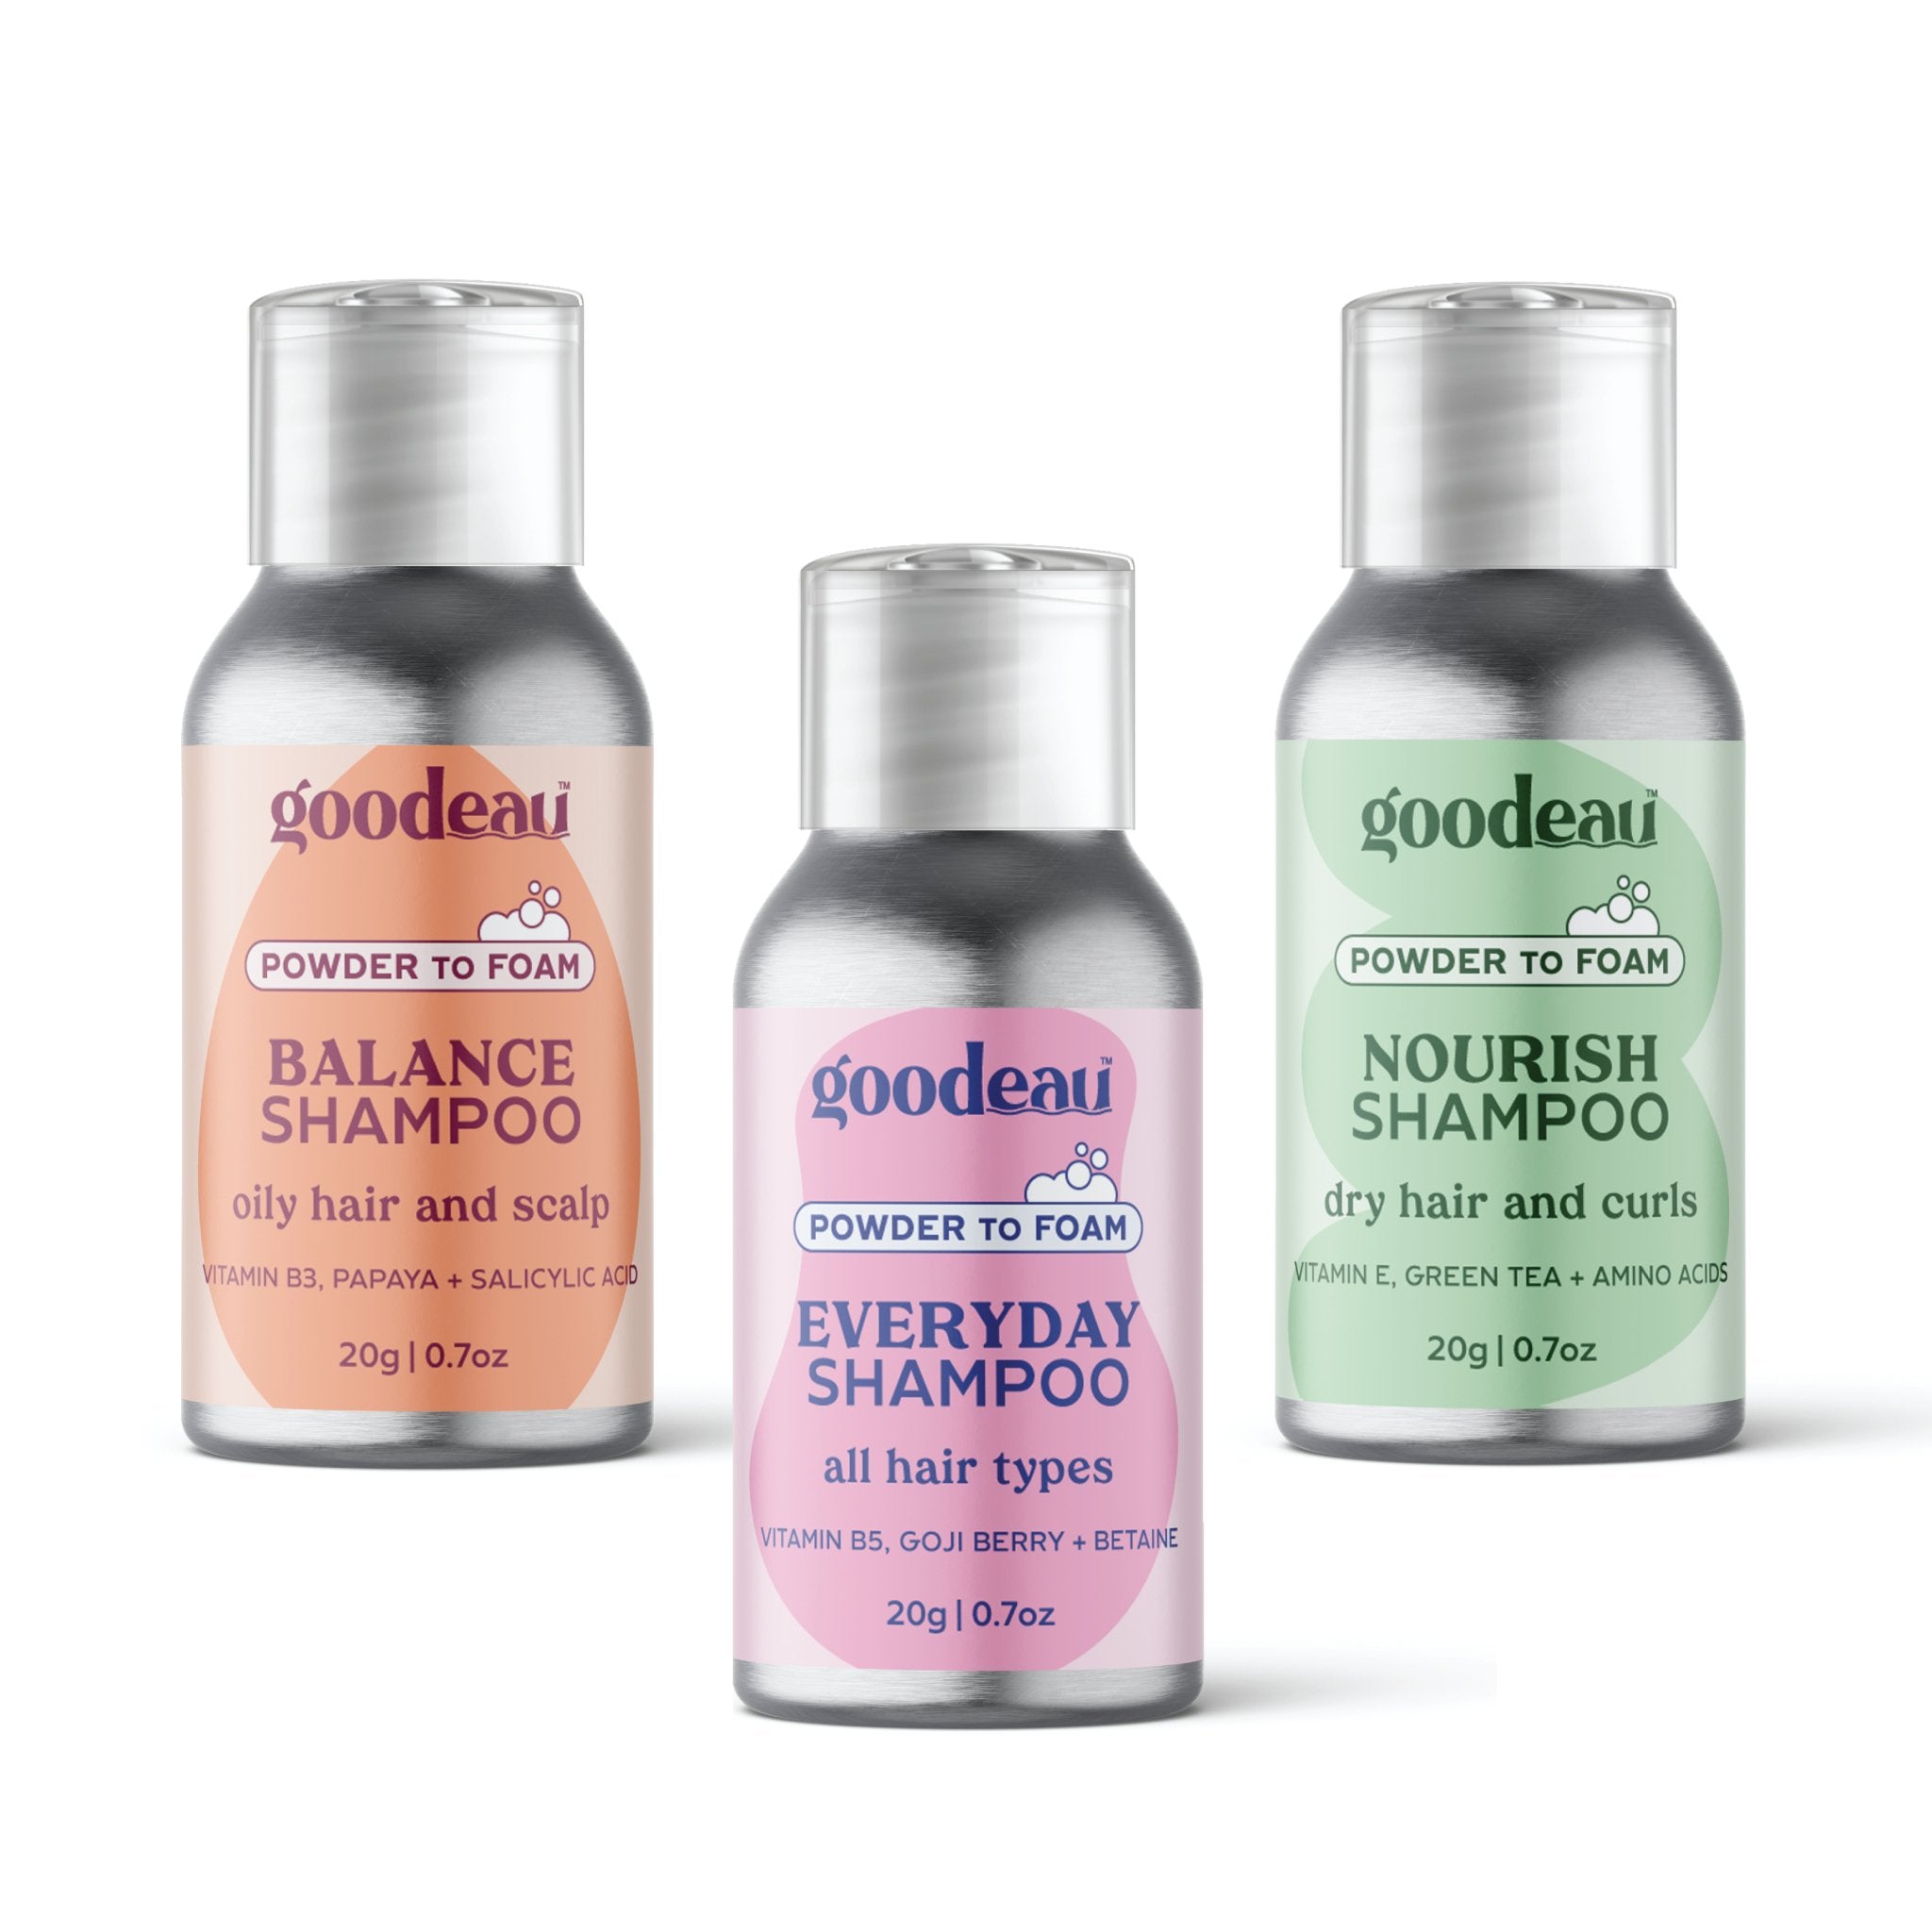 Shampoo Trial Pack - Goodeau